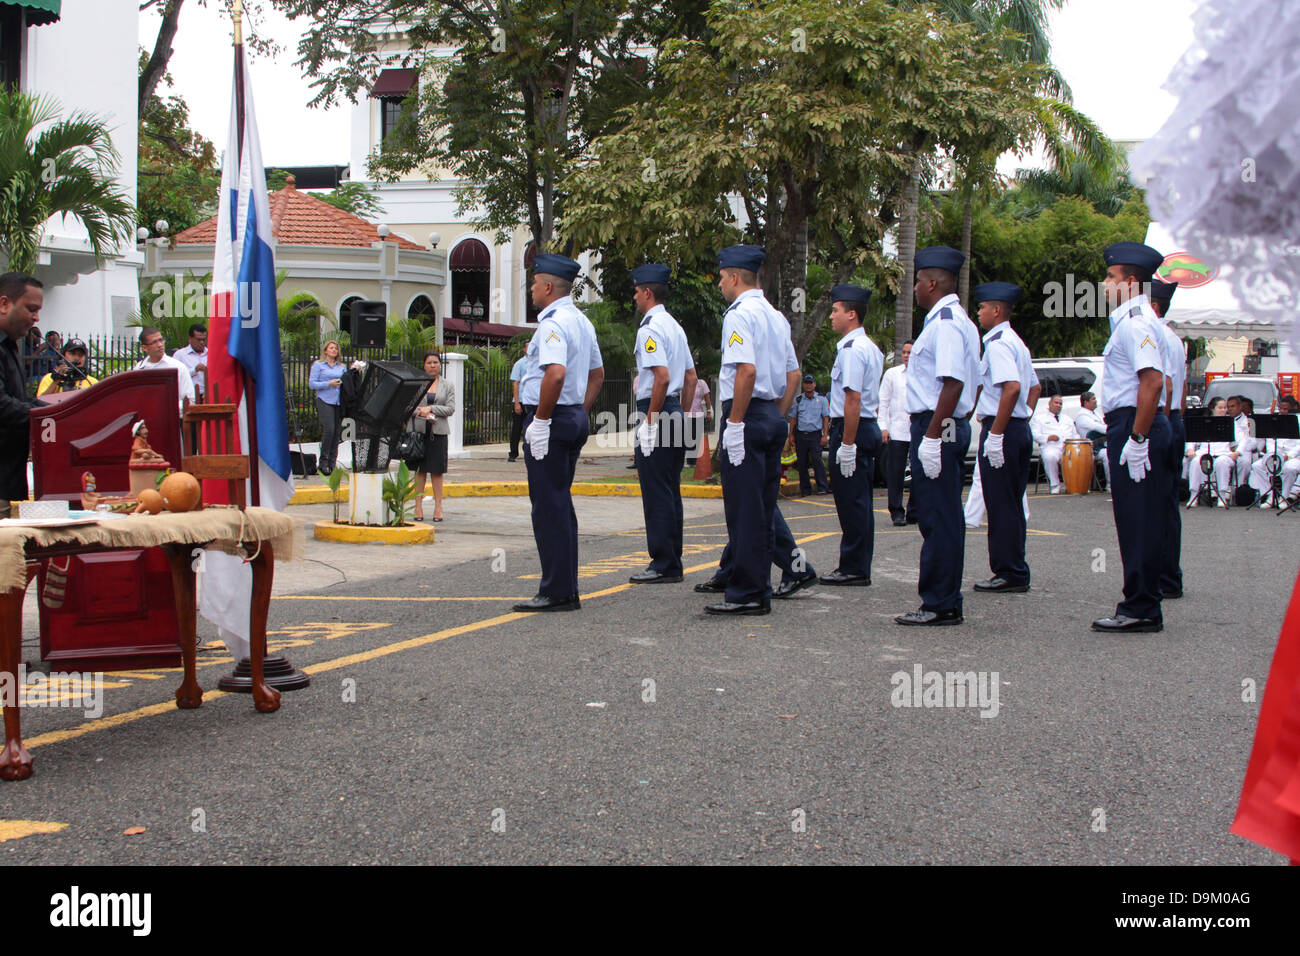 Membres de la Garde nationale de l'air Panama sur la formation lors d'une cérémonie au Palais du Gouverneur, la province de Panama, Panama. Banque D'Images